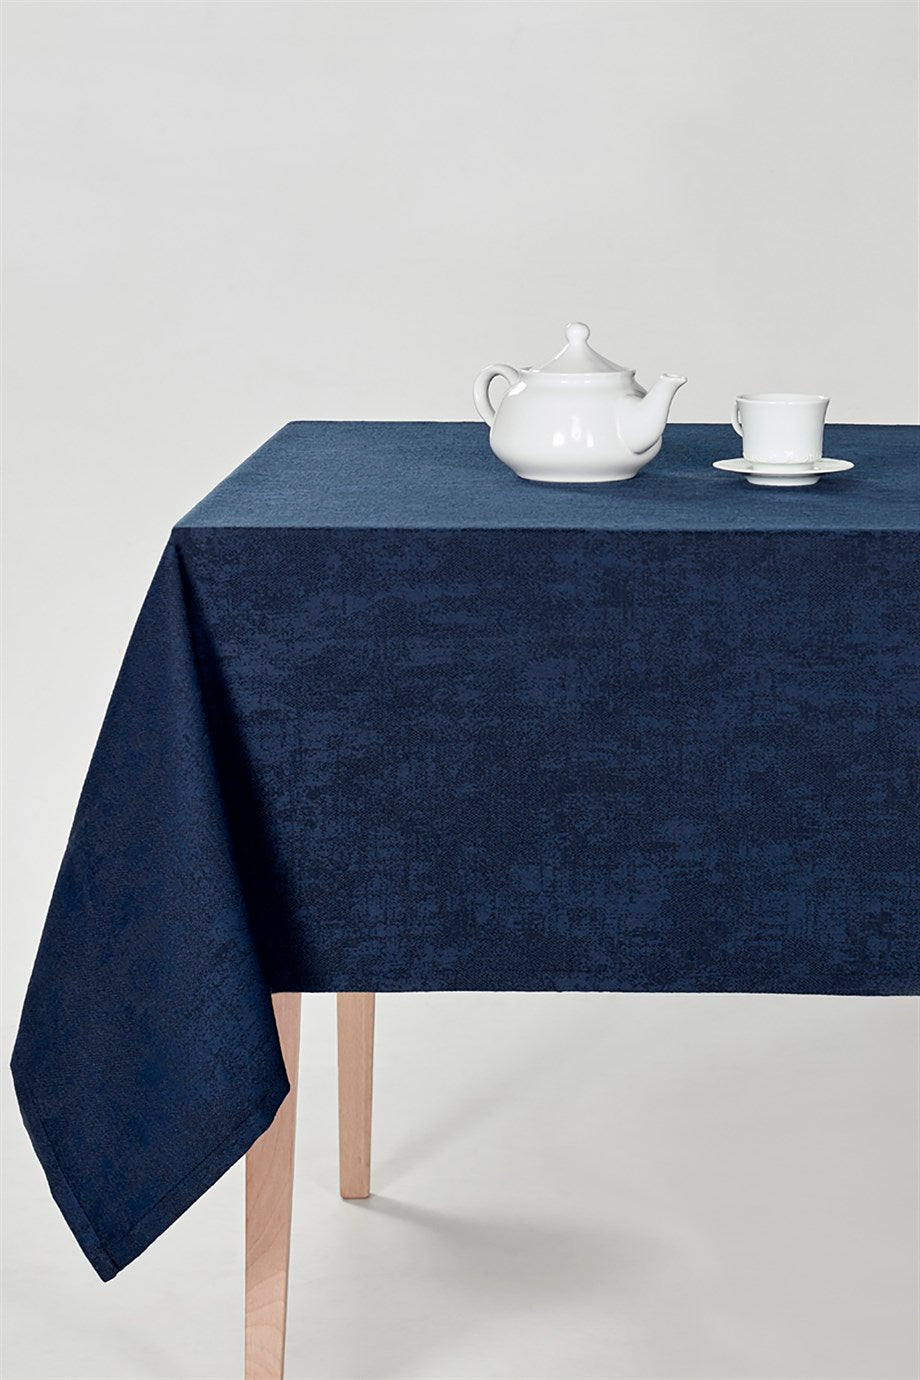 DENIZLI CONCEPT Milano Table Cloth Navy Blue